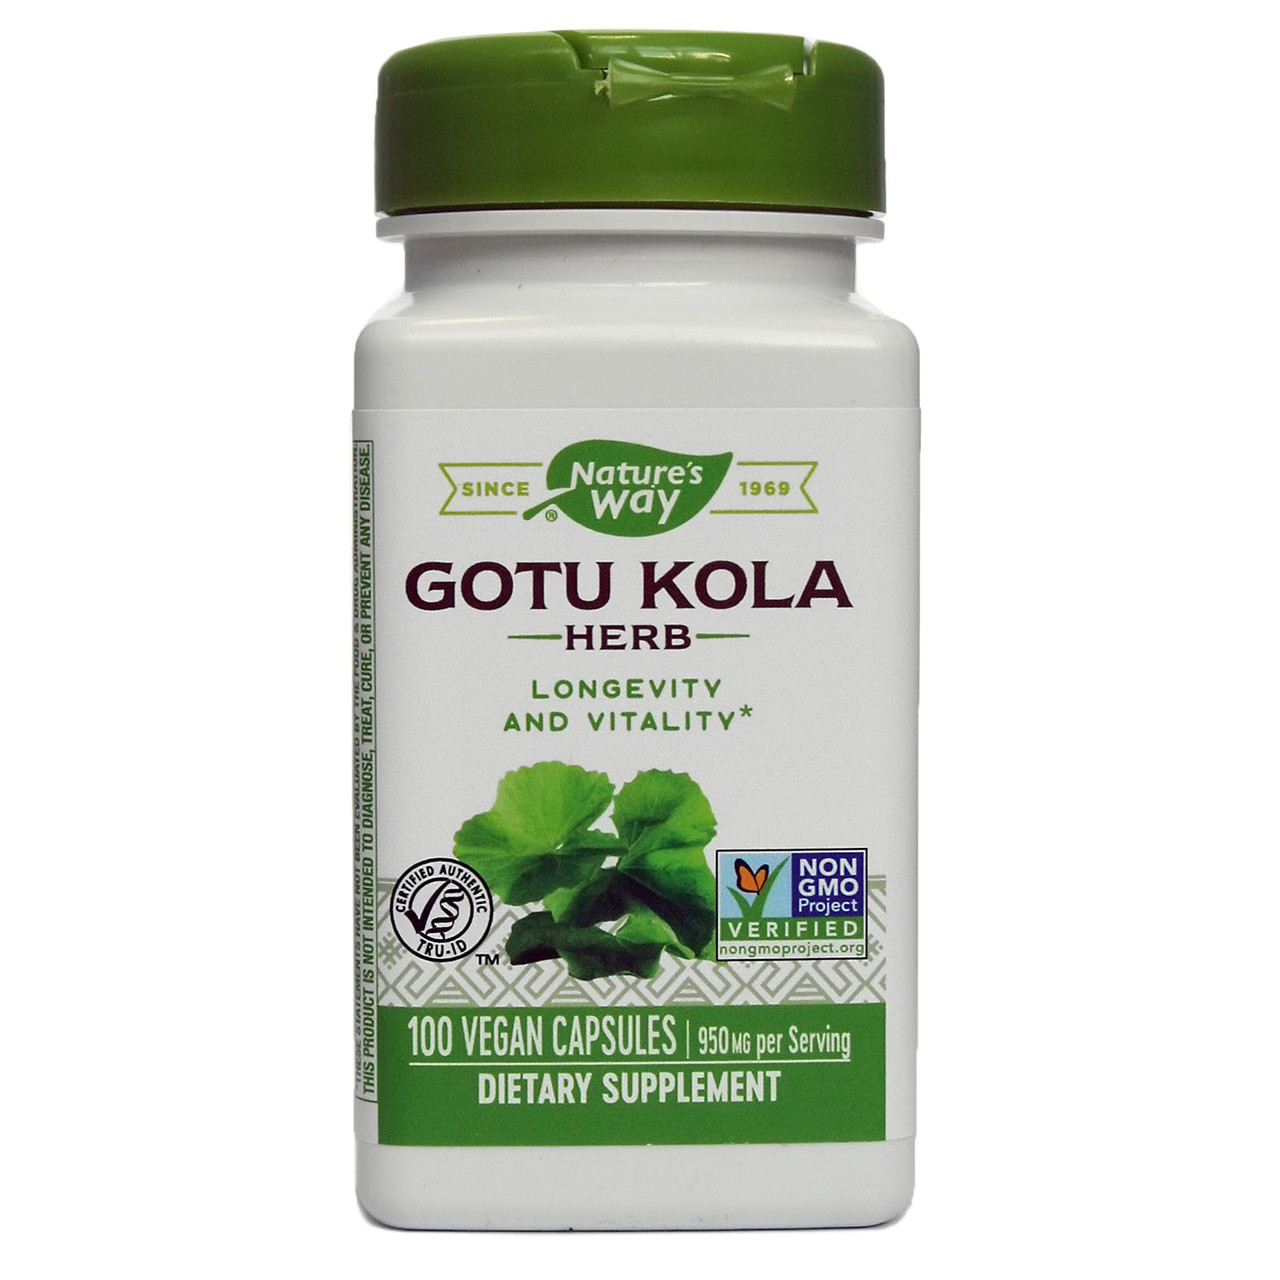 Готу Кола, Gotu Kola, nature's Way, 475 грам, 100 капсул, фото 1